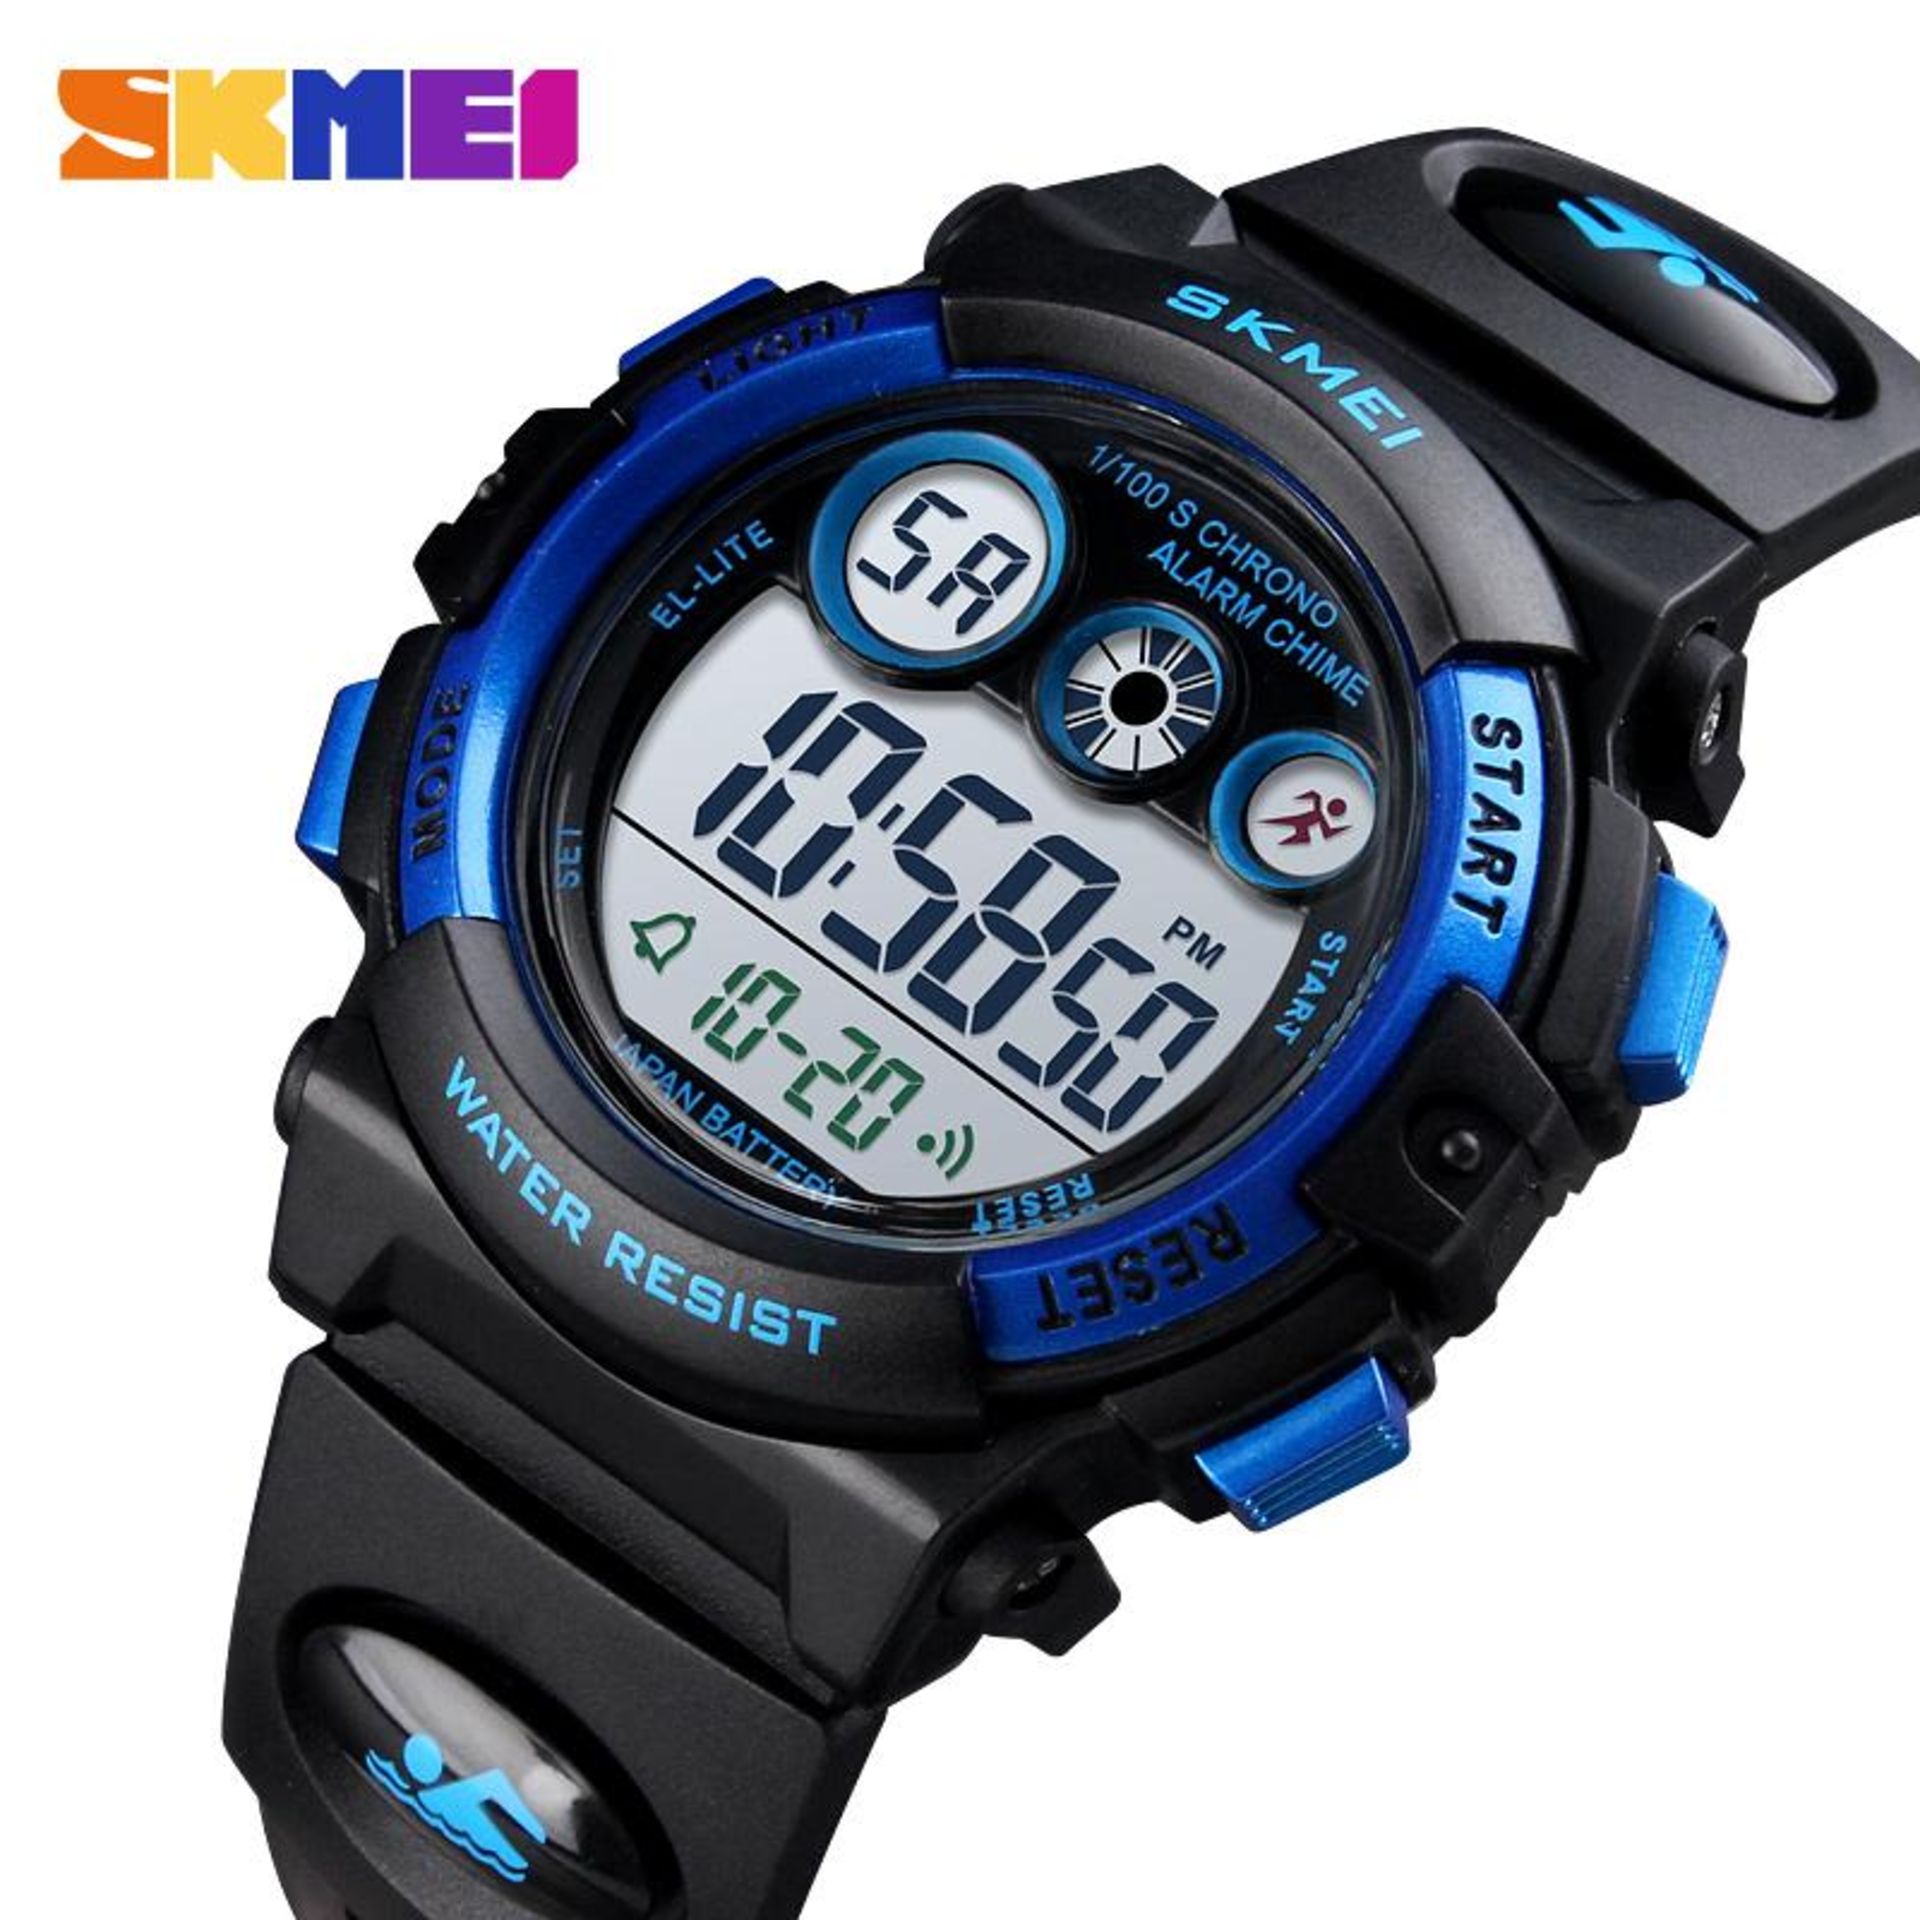 Brand new SKMEI Digital Sports waterproof alarm-chrono watch